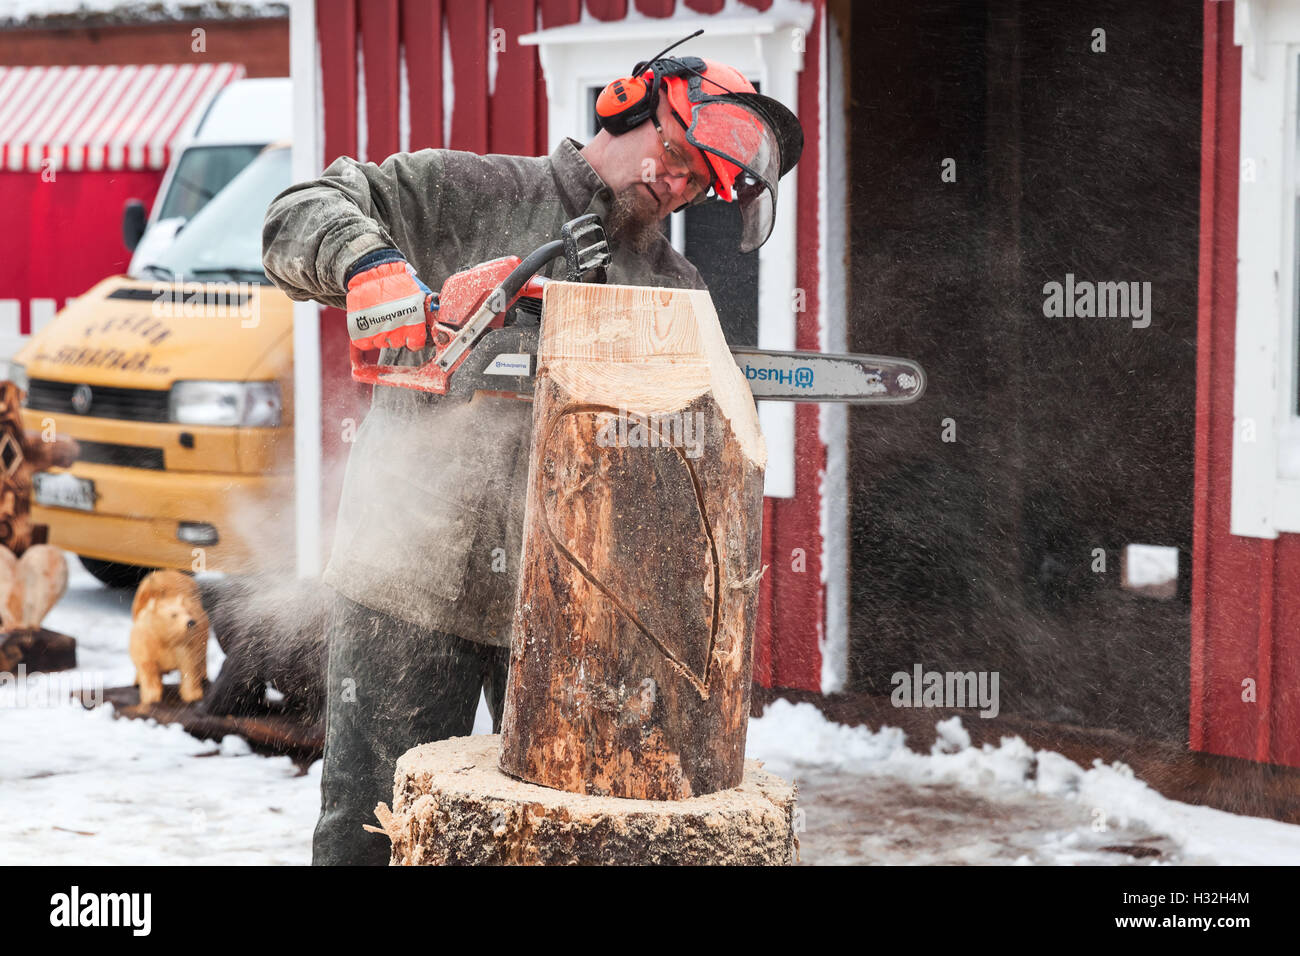 Hamina, Finlande - le 13 décembre 2014 : maître sculpteur avec une tronçonneuse produit oiseau sculpture en bois Banque D'Images